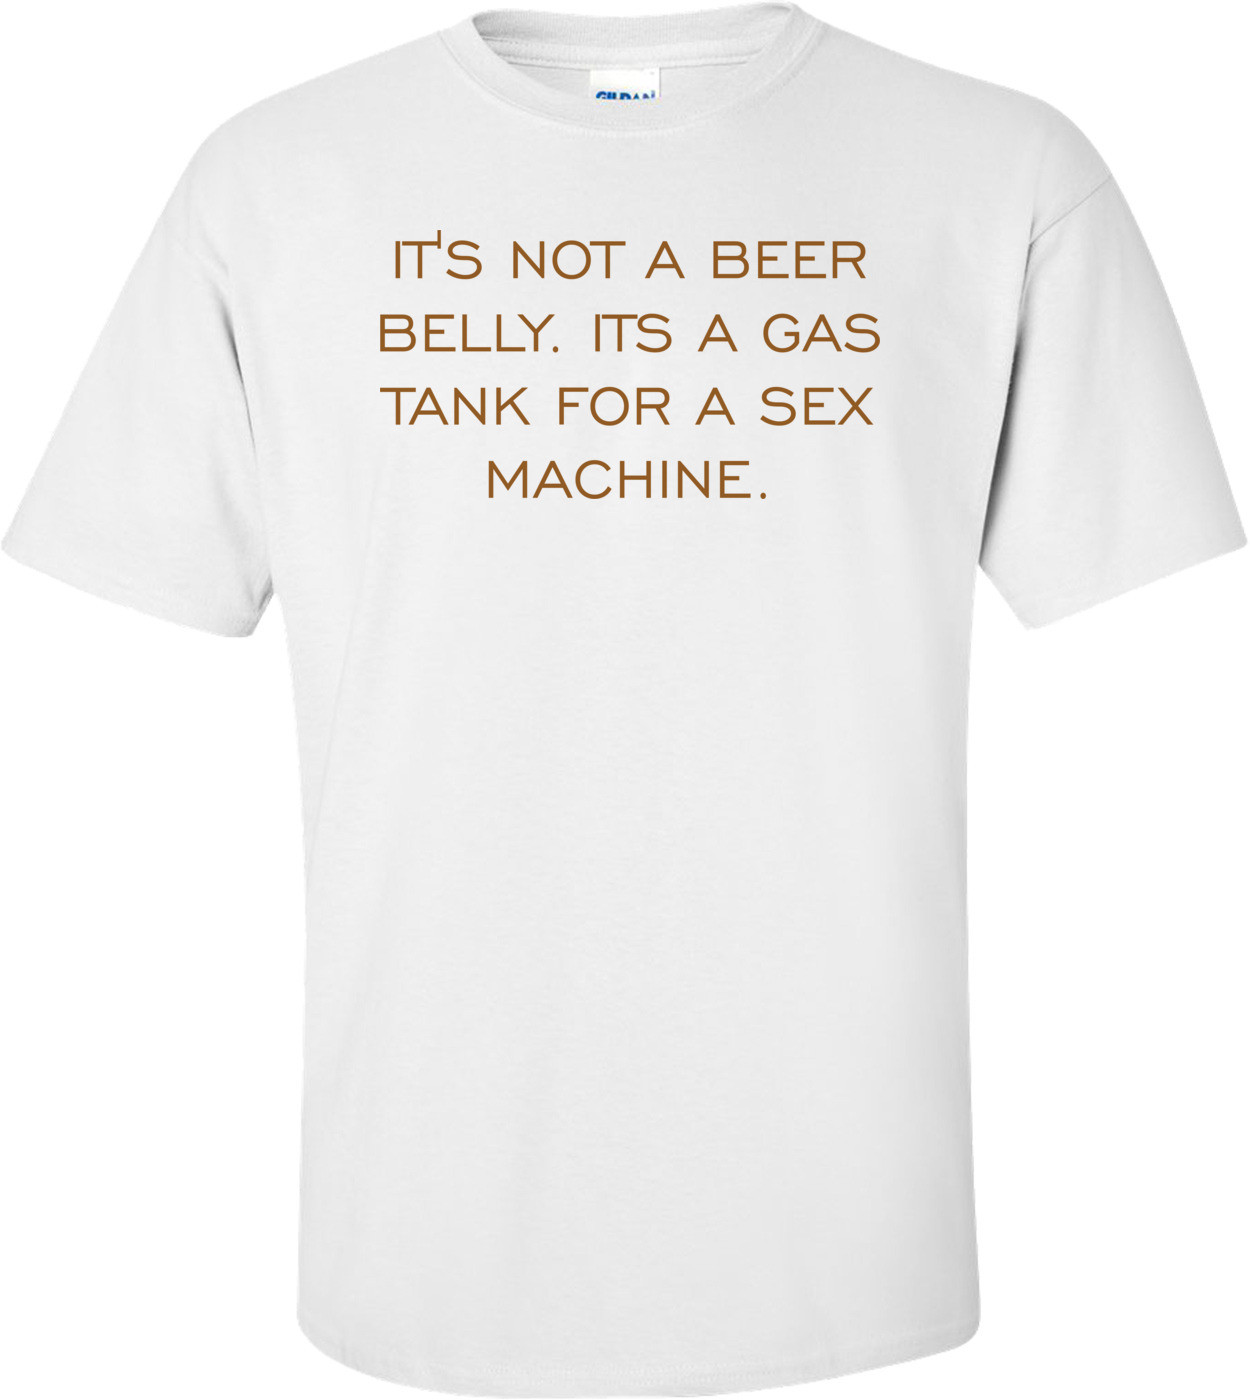 IT'S NOT A BEER BELLY. ITS A GAS TANK FOR A SEX MACHINE.